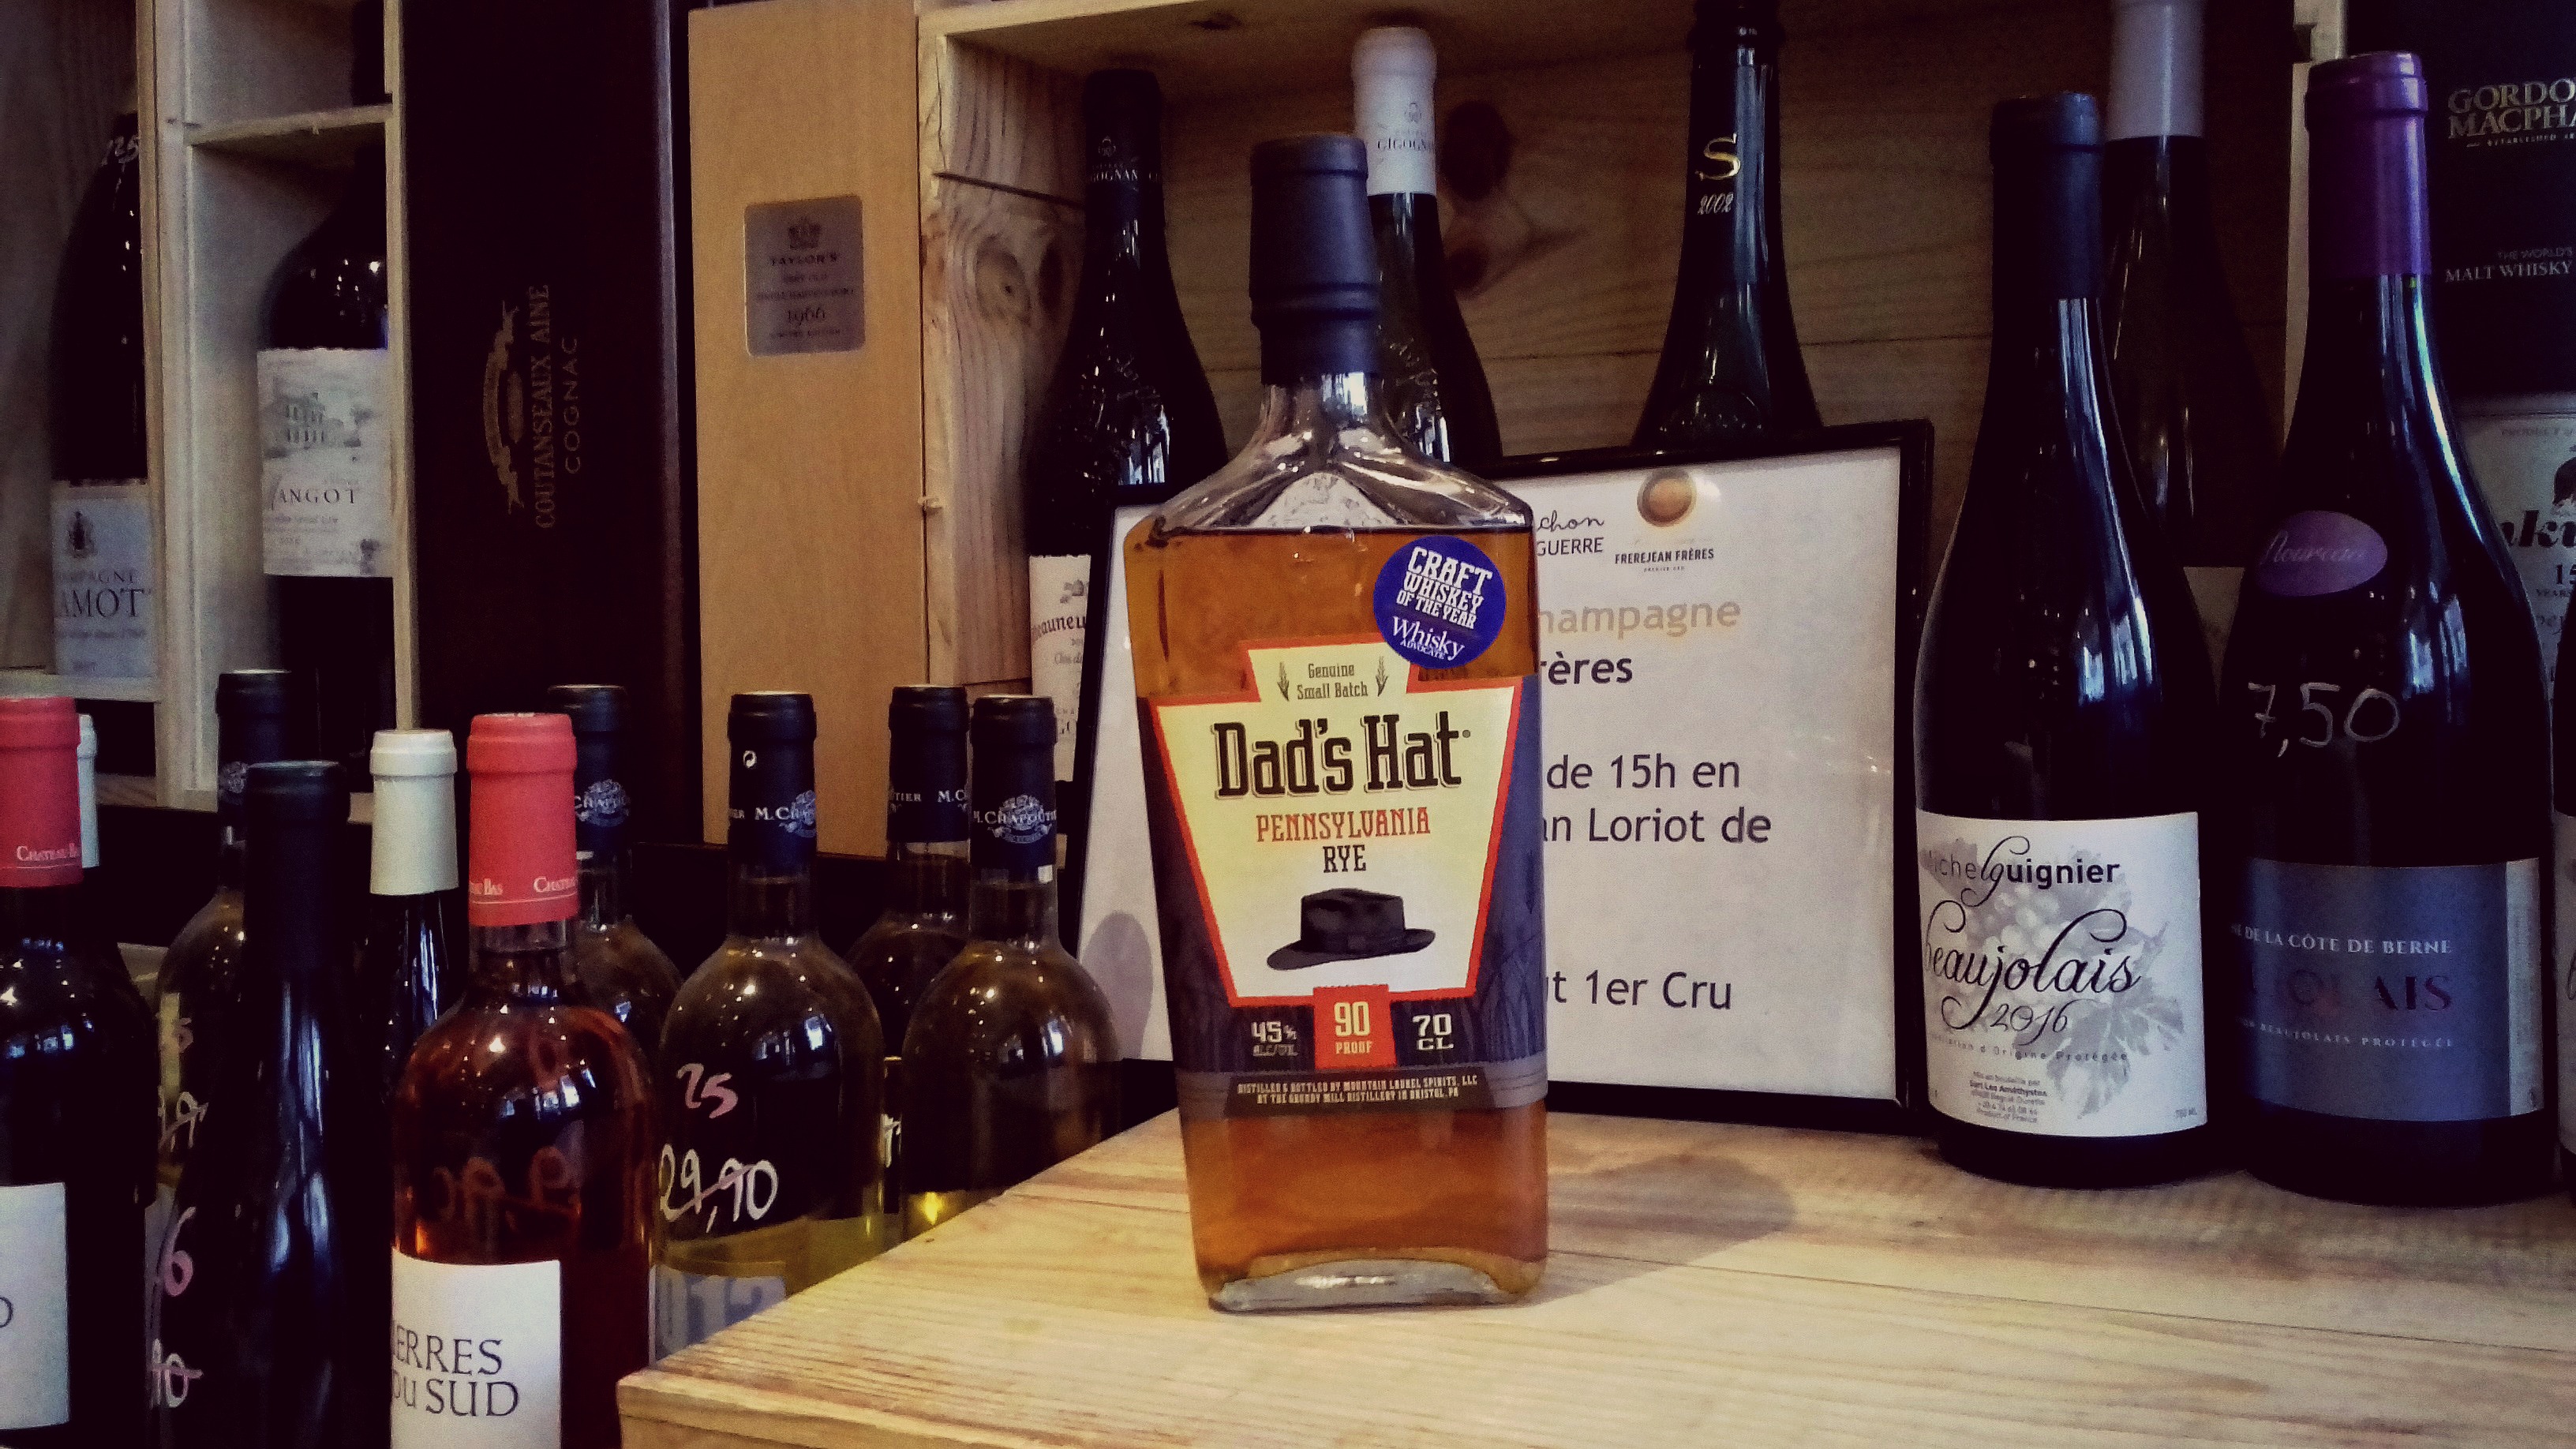 Whisky Dad's Hat - A l'Ombre d'un Bouchon - Paris